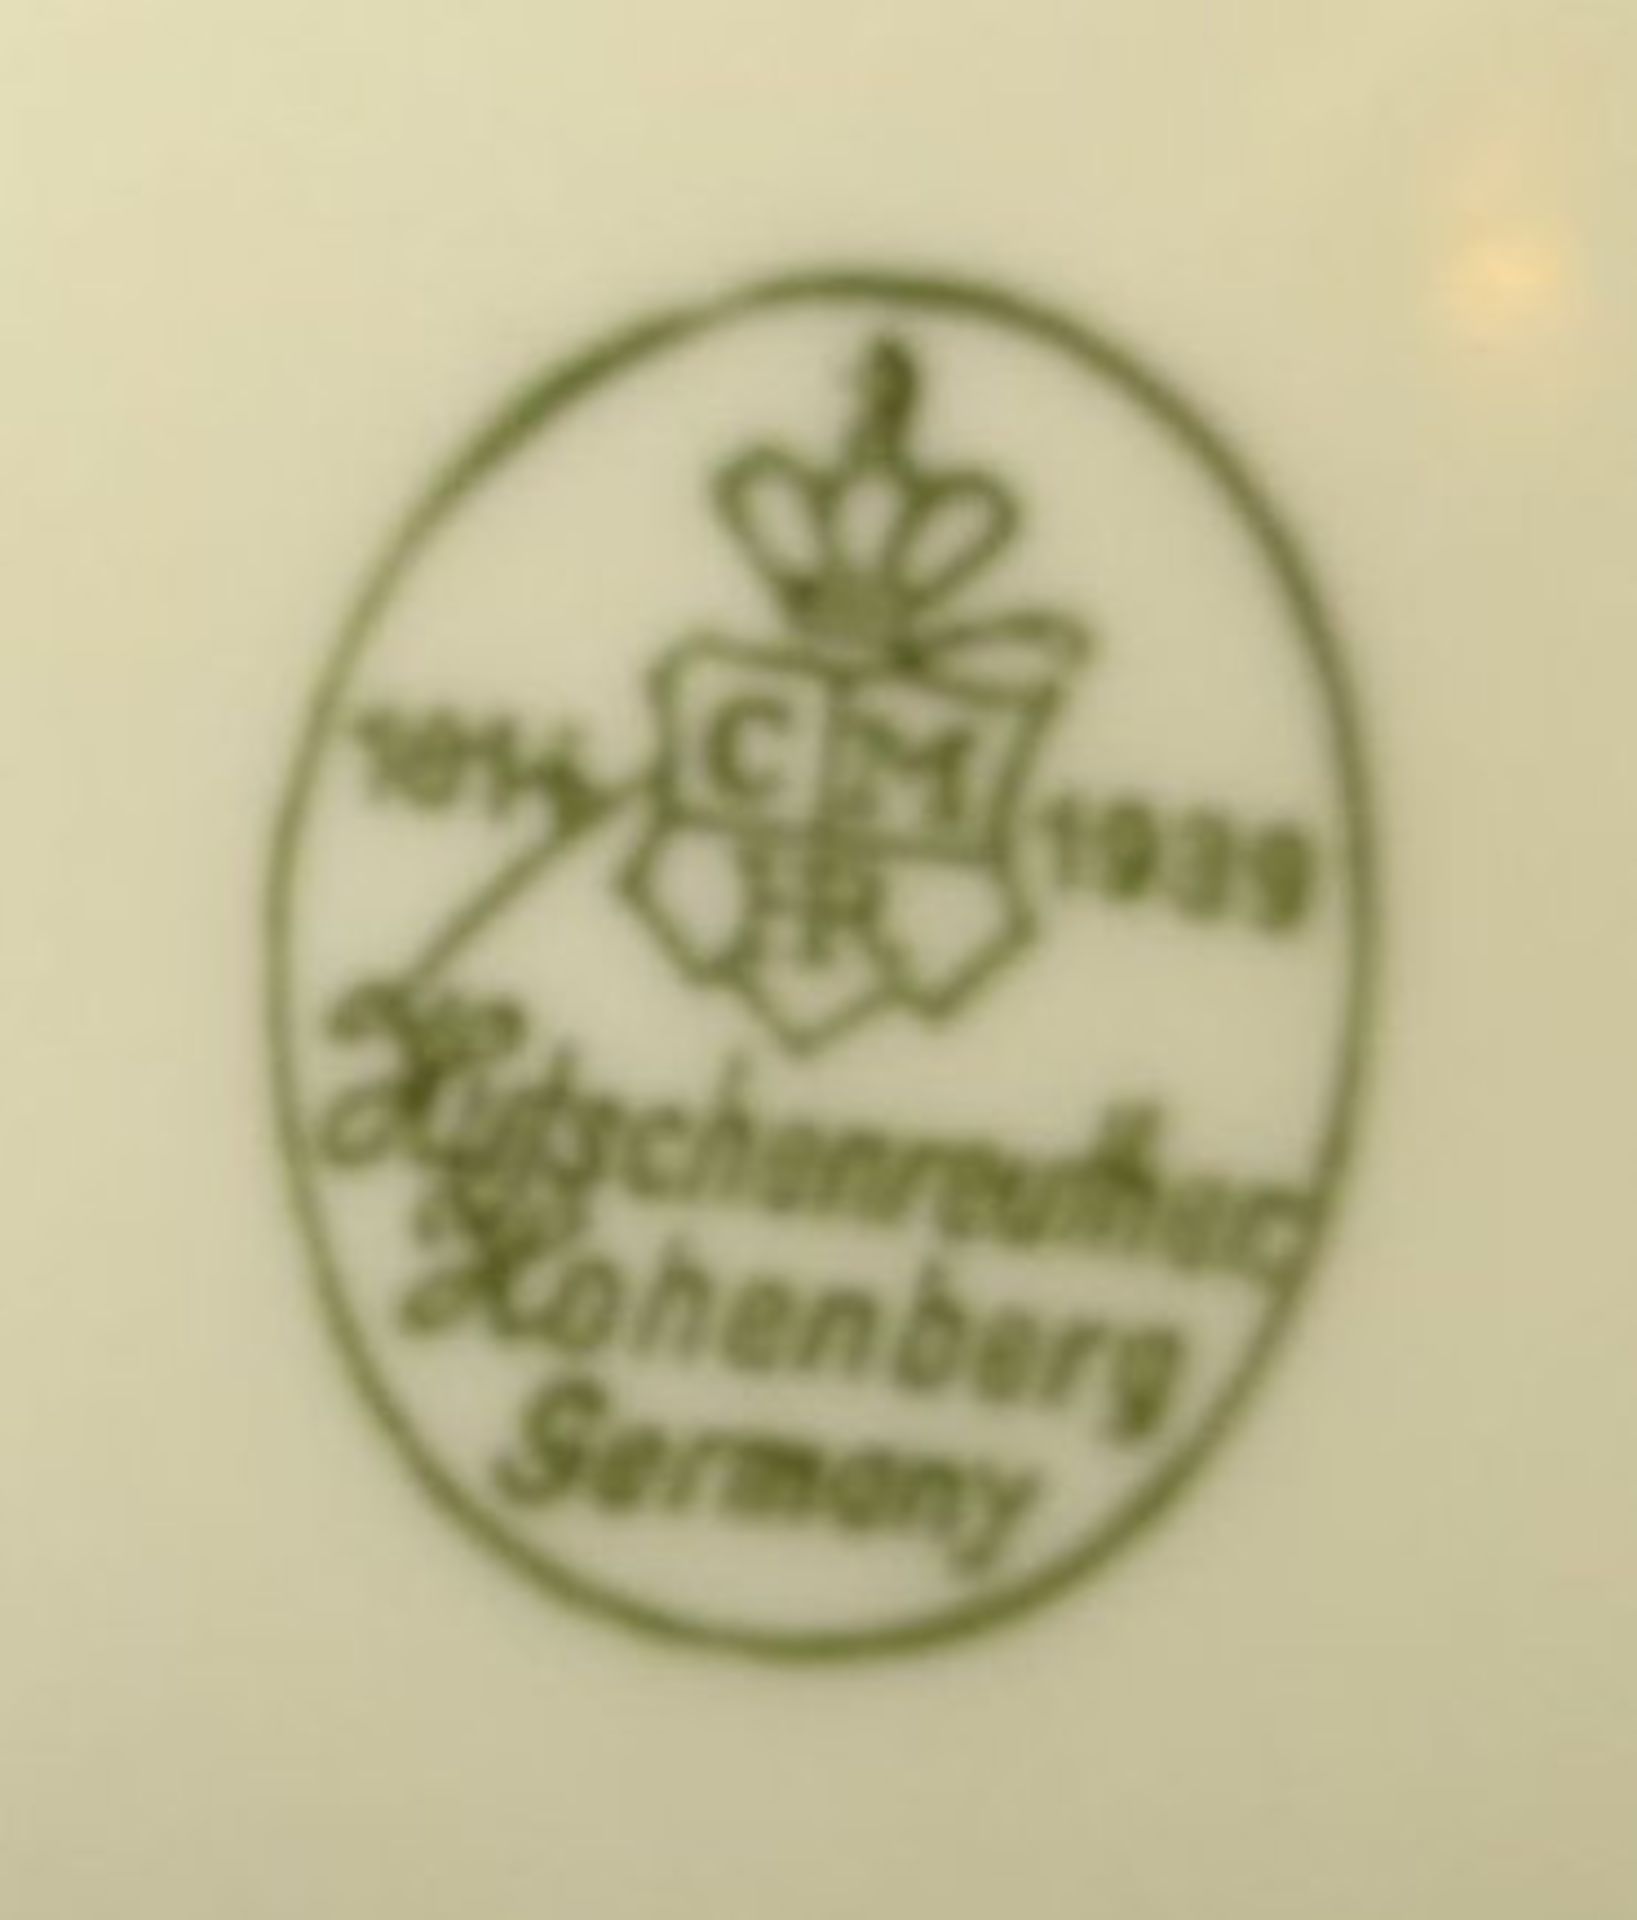 Speiseservice "Hutschenreuther" Jubil. Marke 1939, 2 Deckel-Terrinen, 4 ovale Platten, 4 runde Schü - Bild 4 aus 4